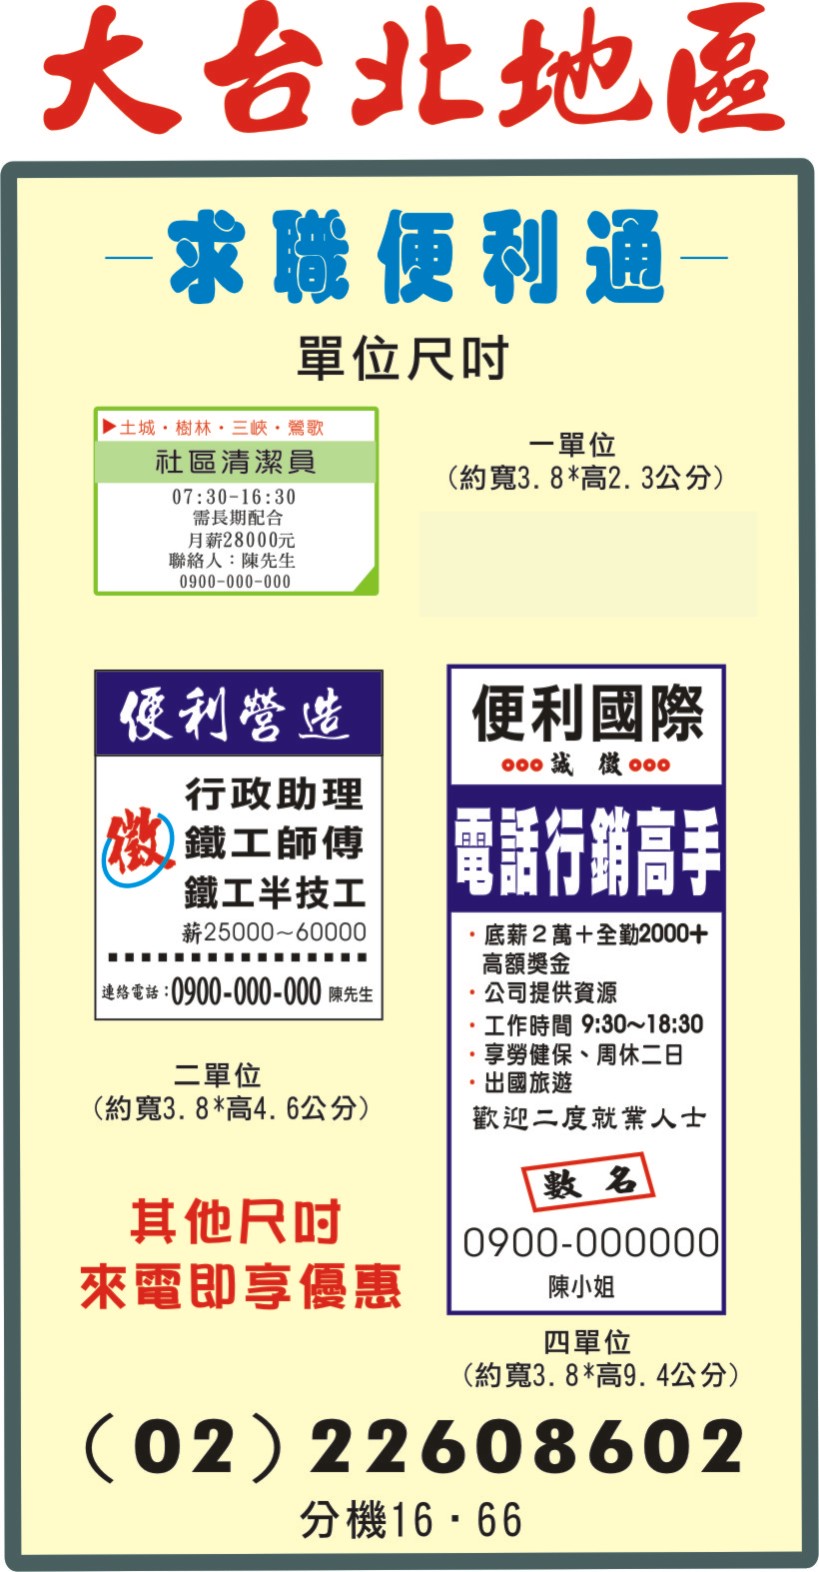 求職便利通台北市,新北市登報-報紙廣告費用,尺寸